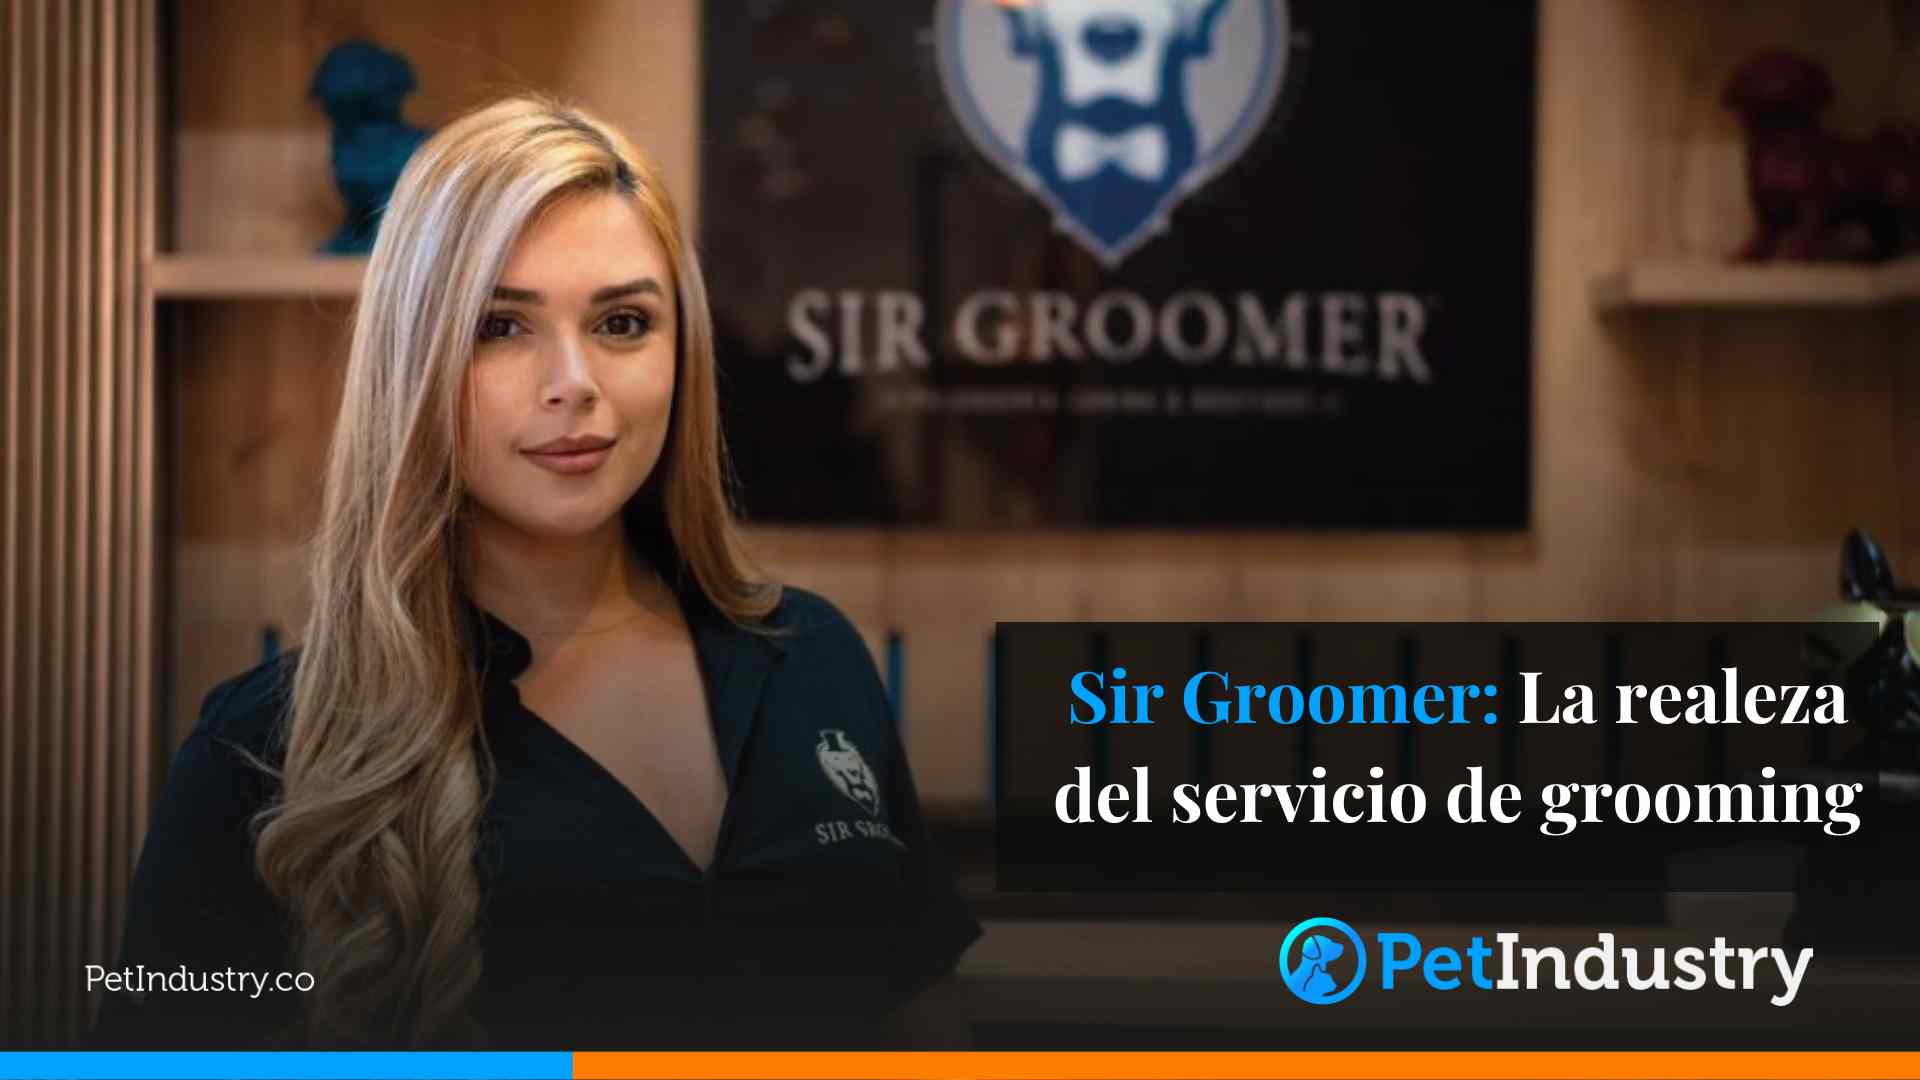 Sir Groomer: La realeza del servicio de grooming